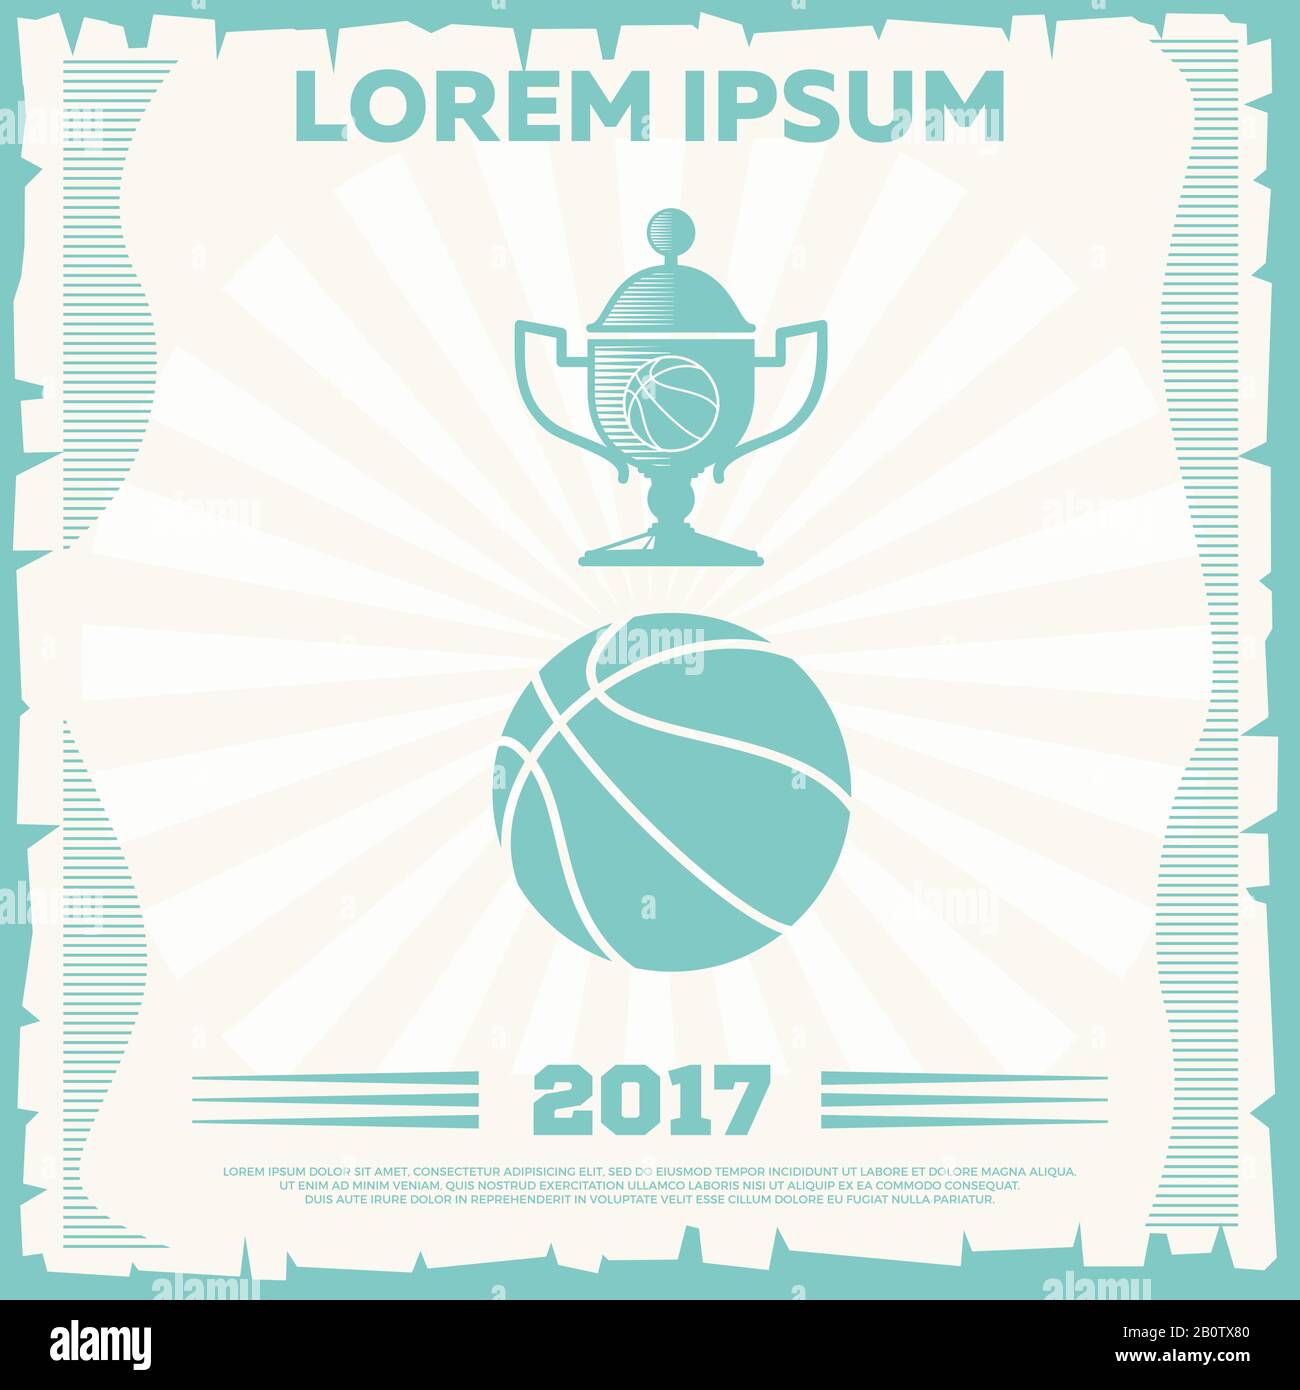 Motif affiche vintage du tournoi de basket-ball. Équipe de sport. Illustration vectorielle Illustration de Vecteur